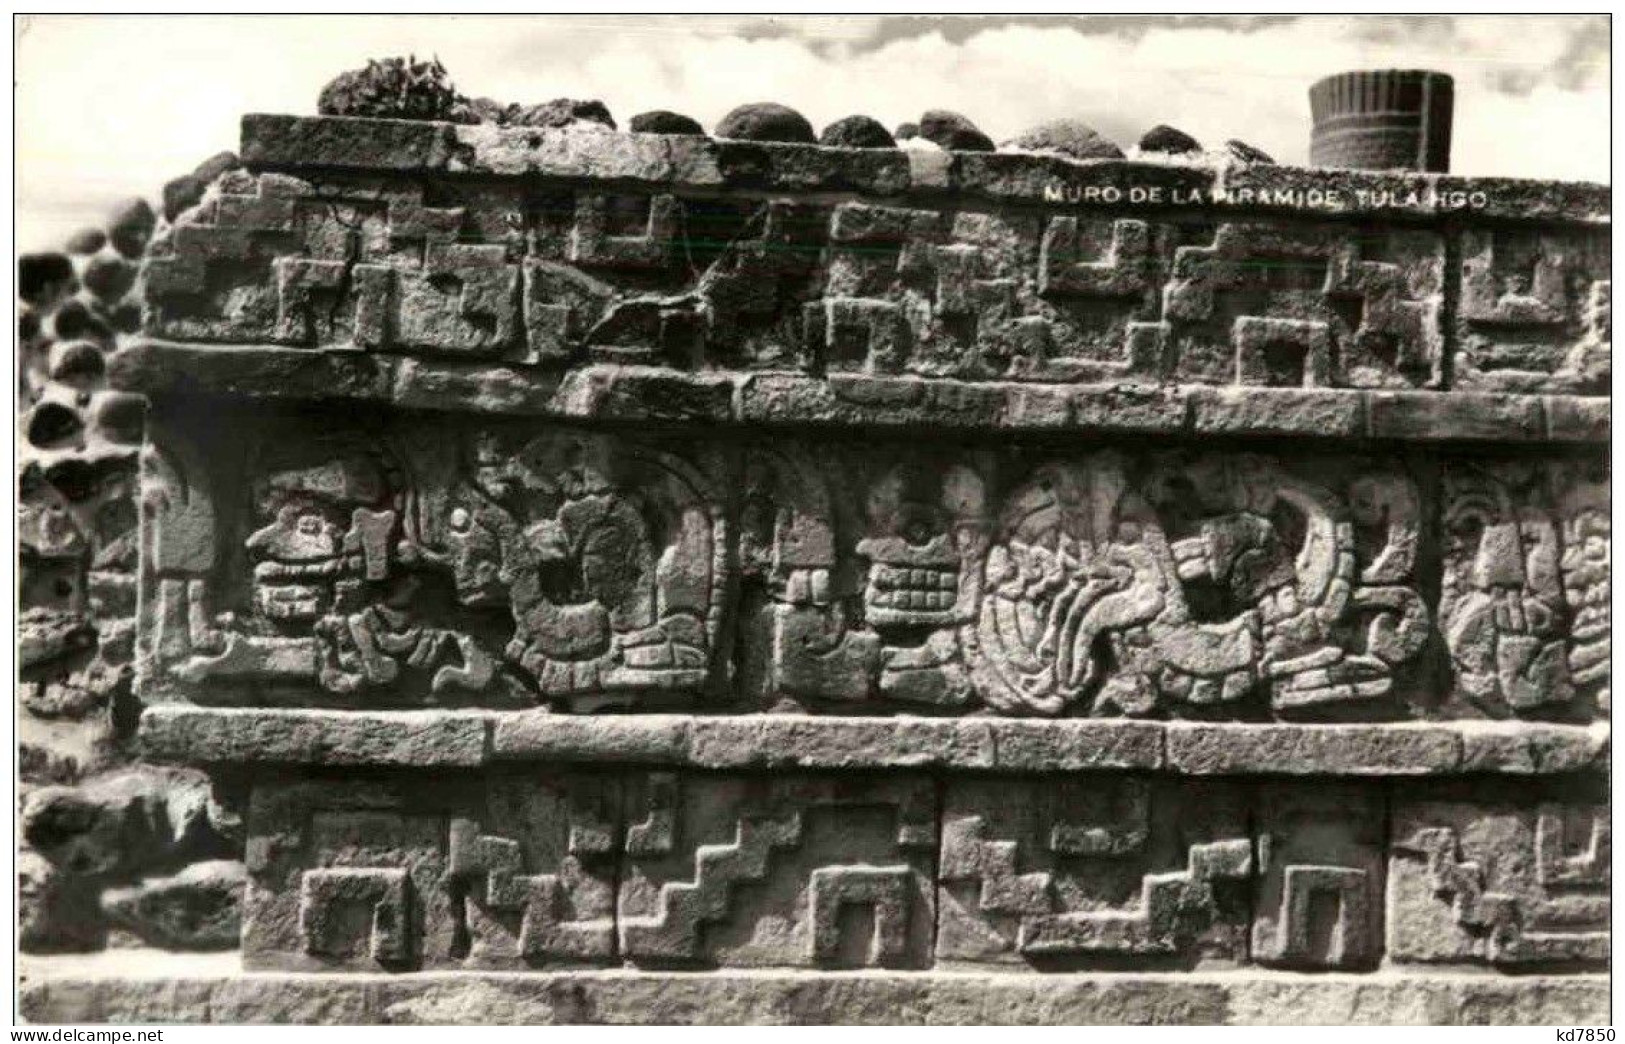 Muro De La Piramide - Tula Hgo - Mexique